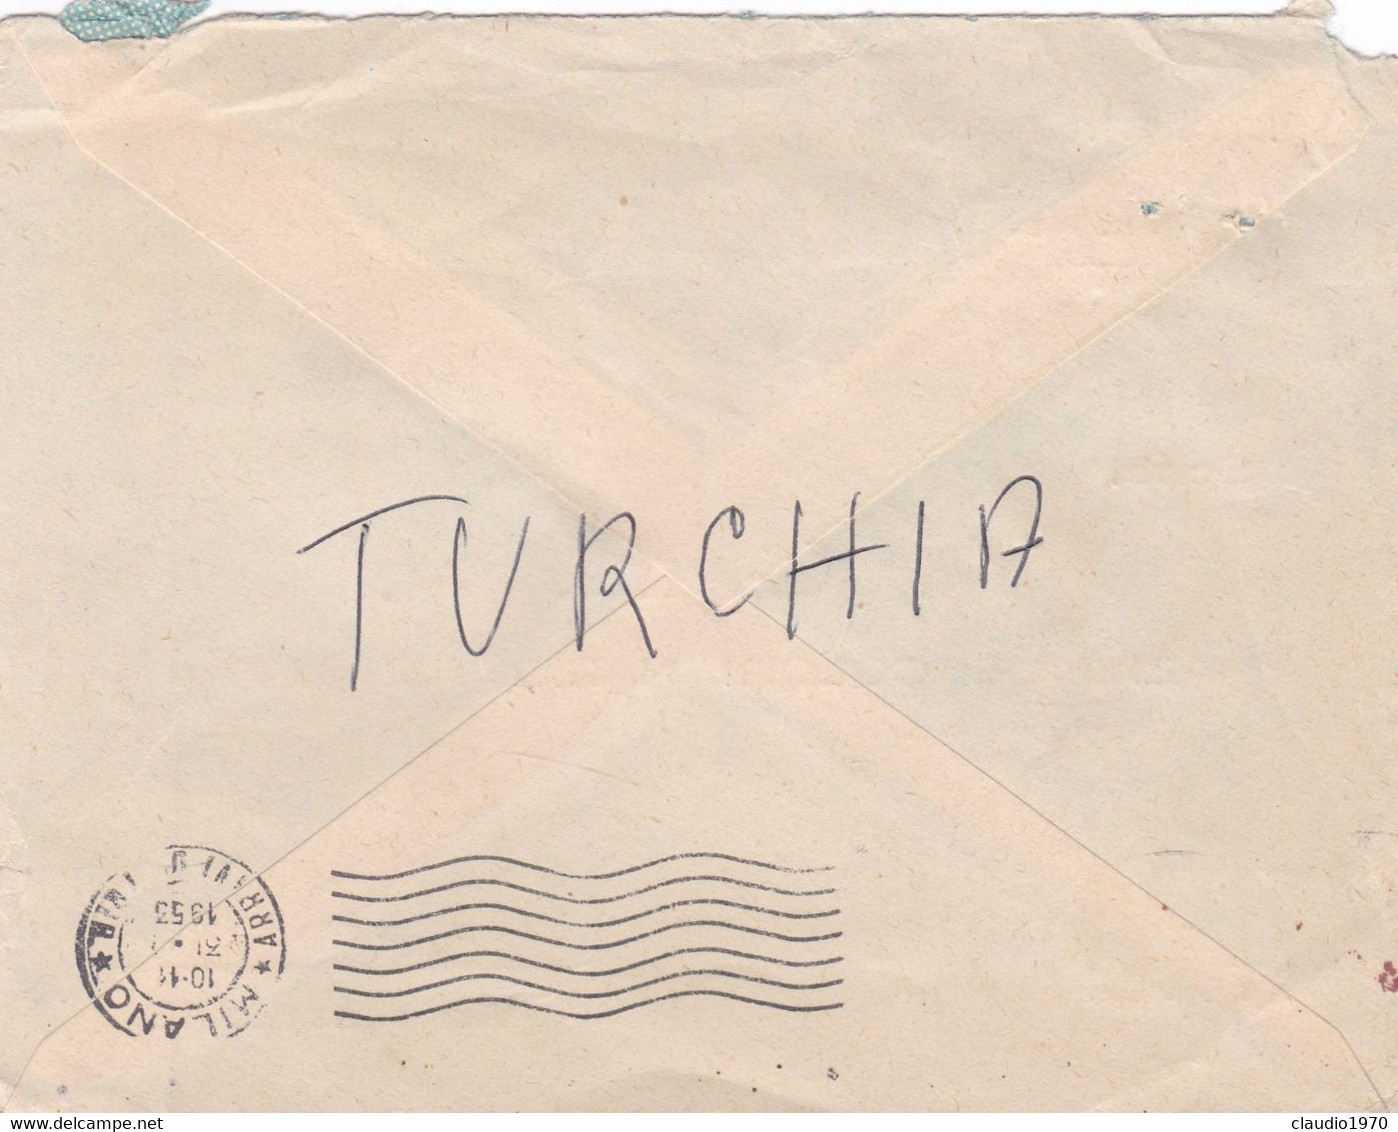 TURCHIA - TùKIYE -  ISTANBUL - STORIA POSTALE - BUSTA PAR AVION  I.T.I. T.I. - T.A.S  VIAGGIATA PER MILANO - ITALIA 1953 - Lettres & Documents